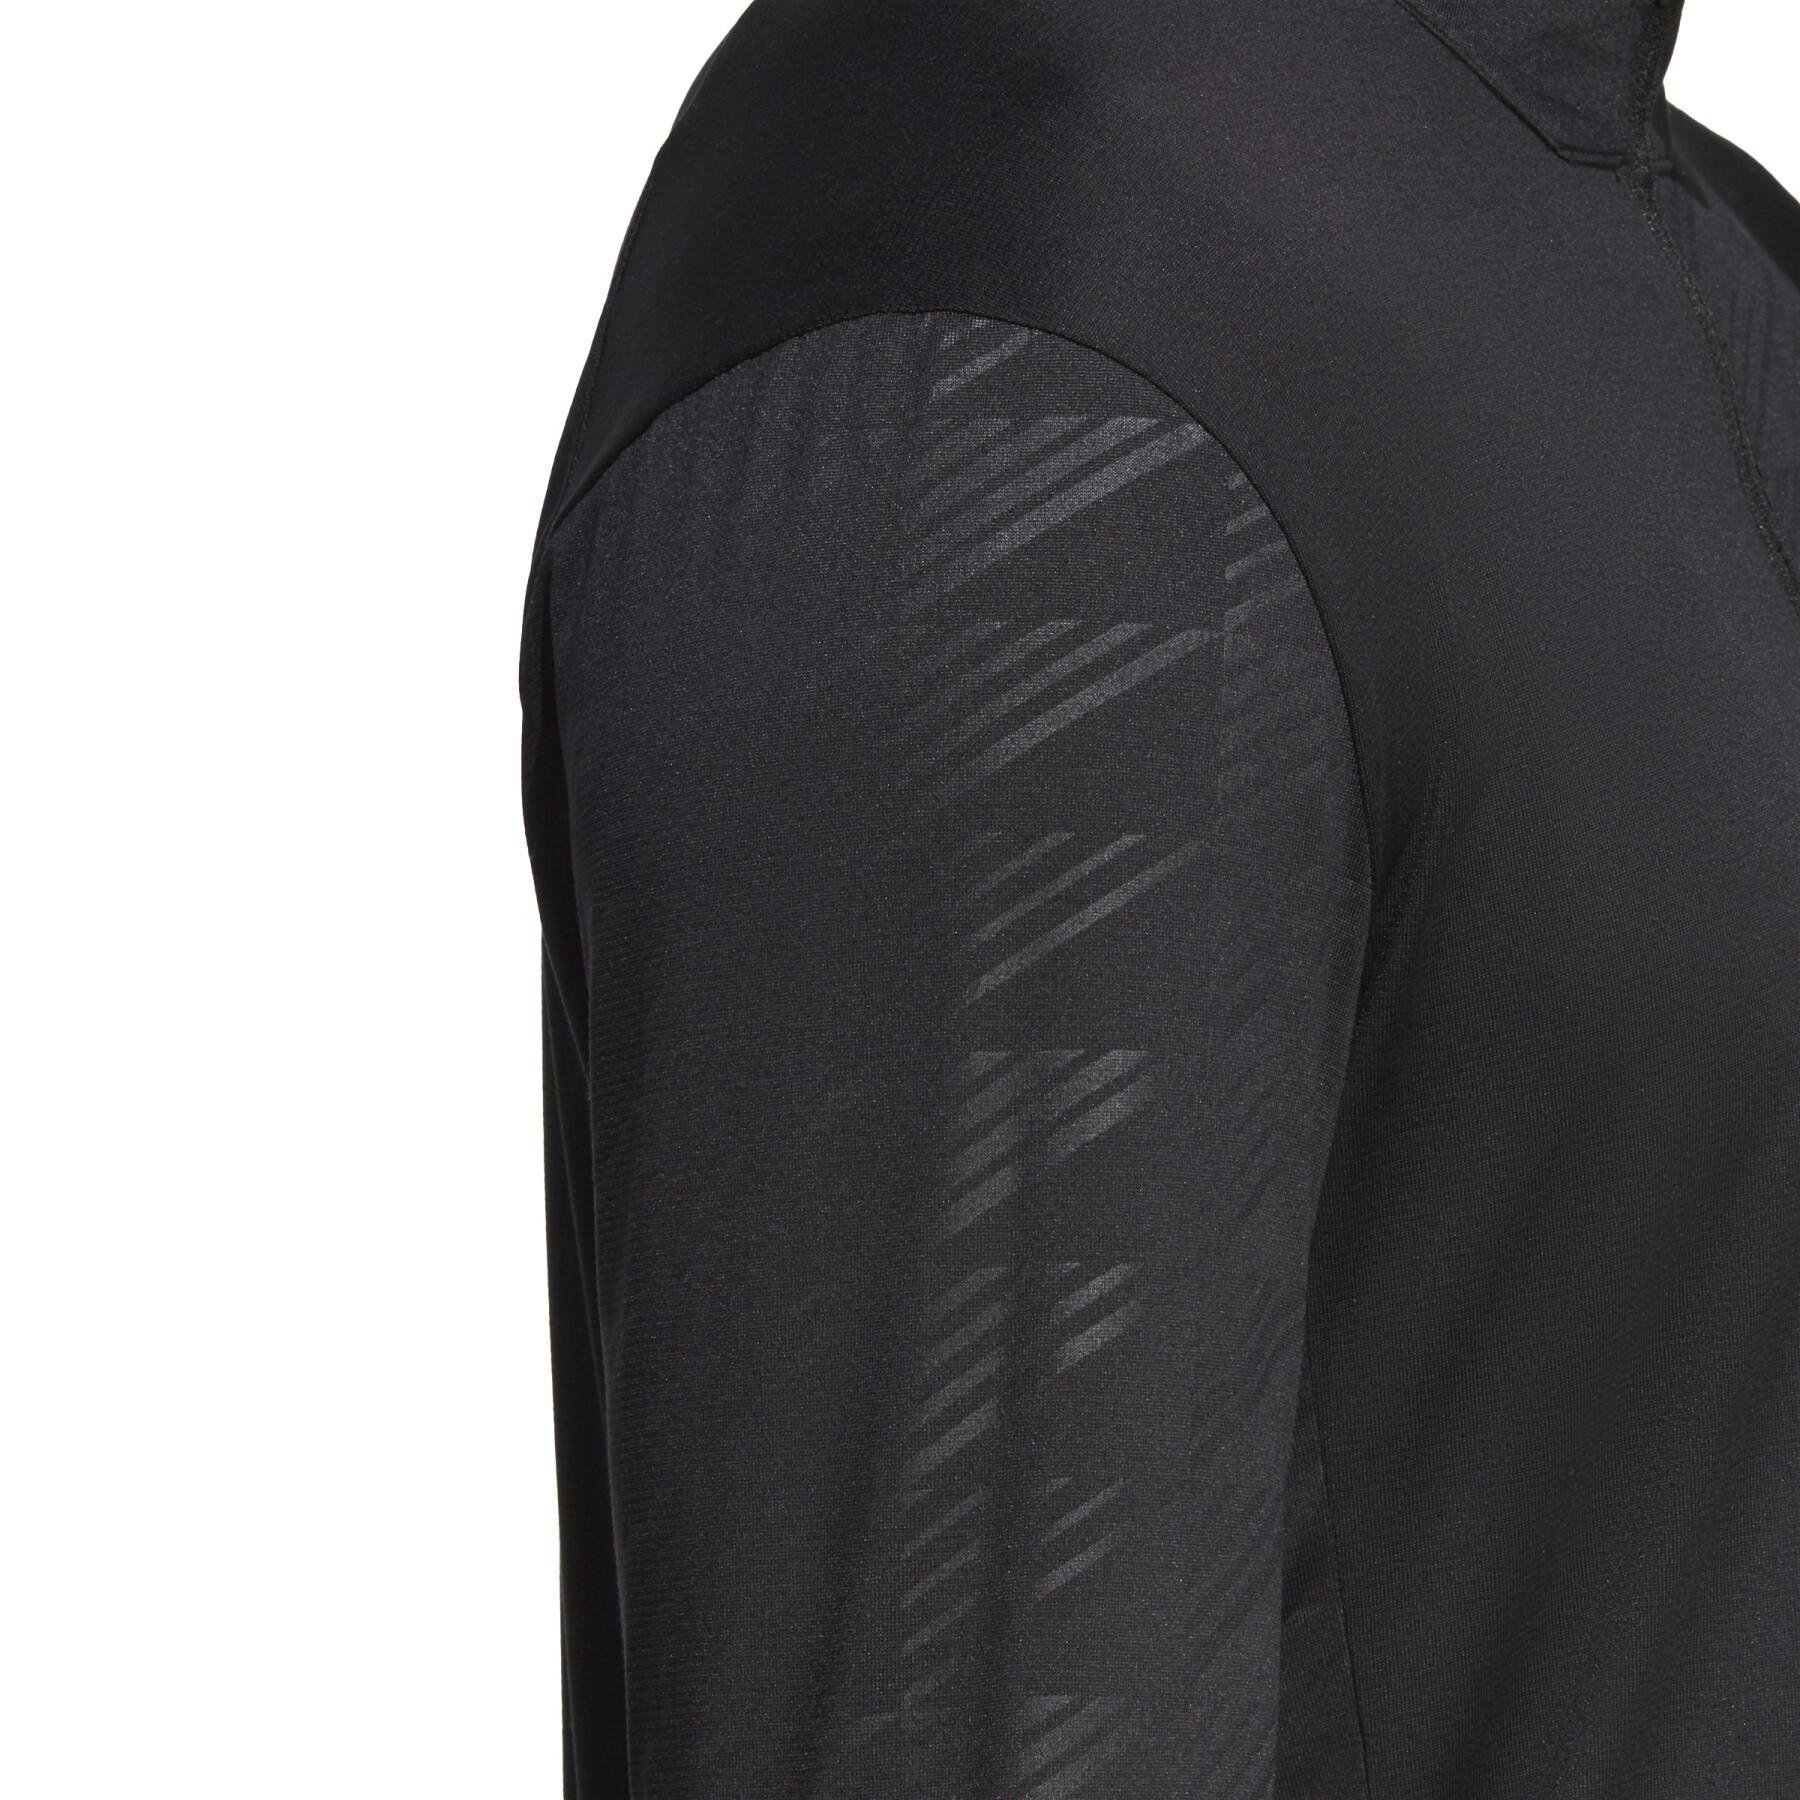 Camiseta interior de manga larga y media cremallera adidas Terrex Multi